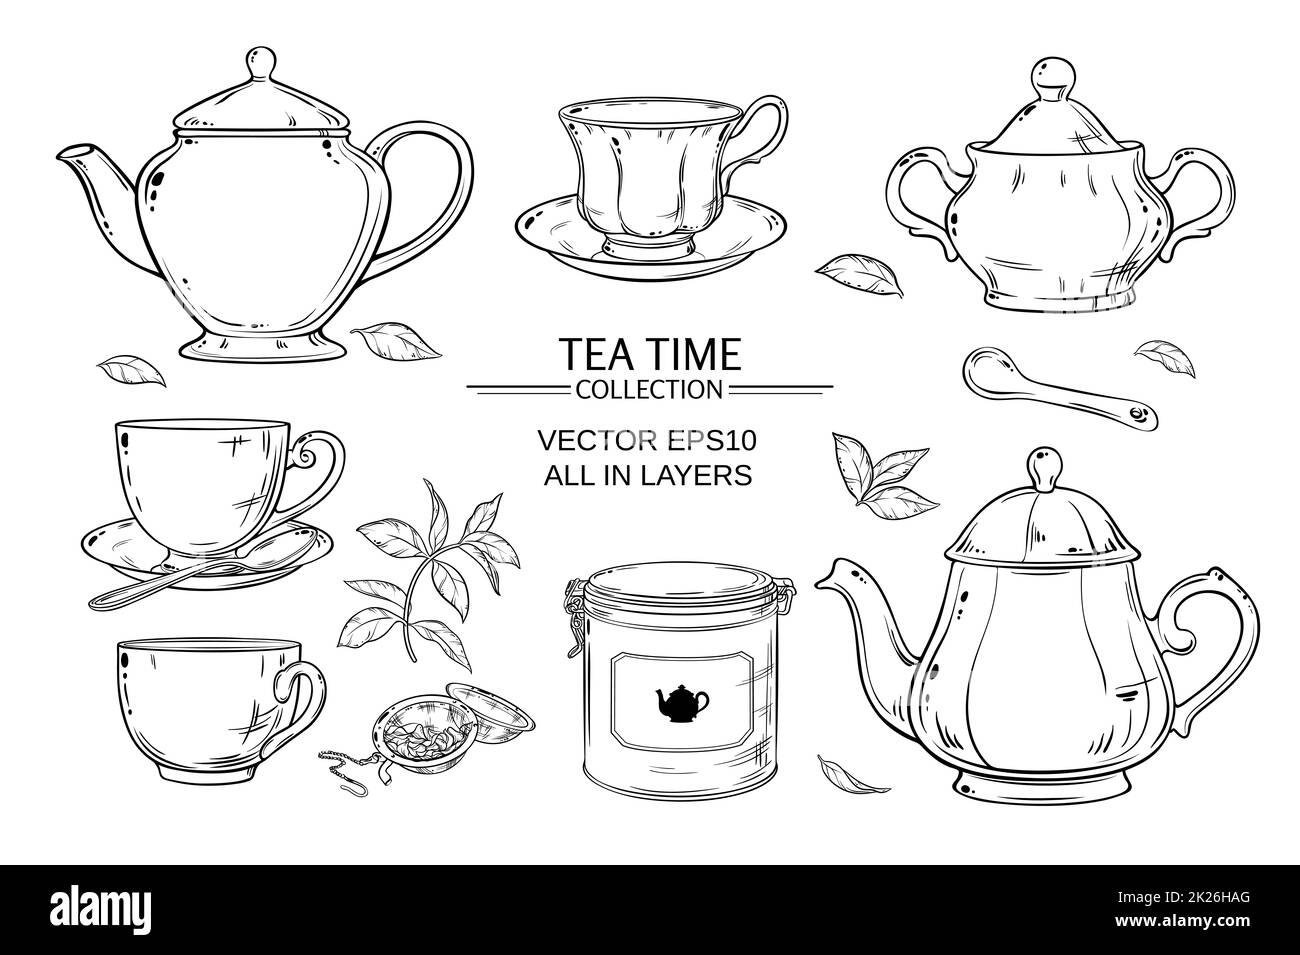 tea set on white background Stock Photo